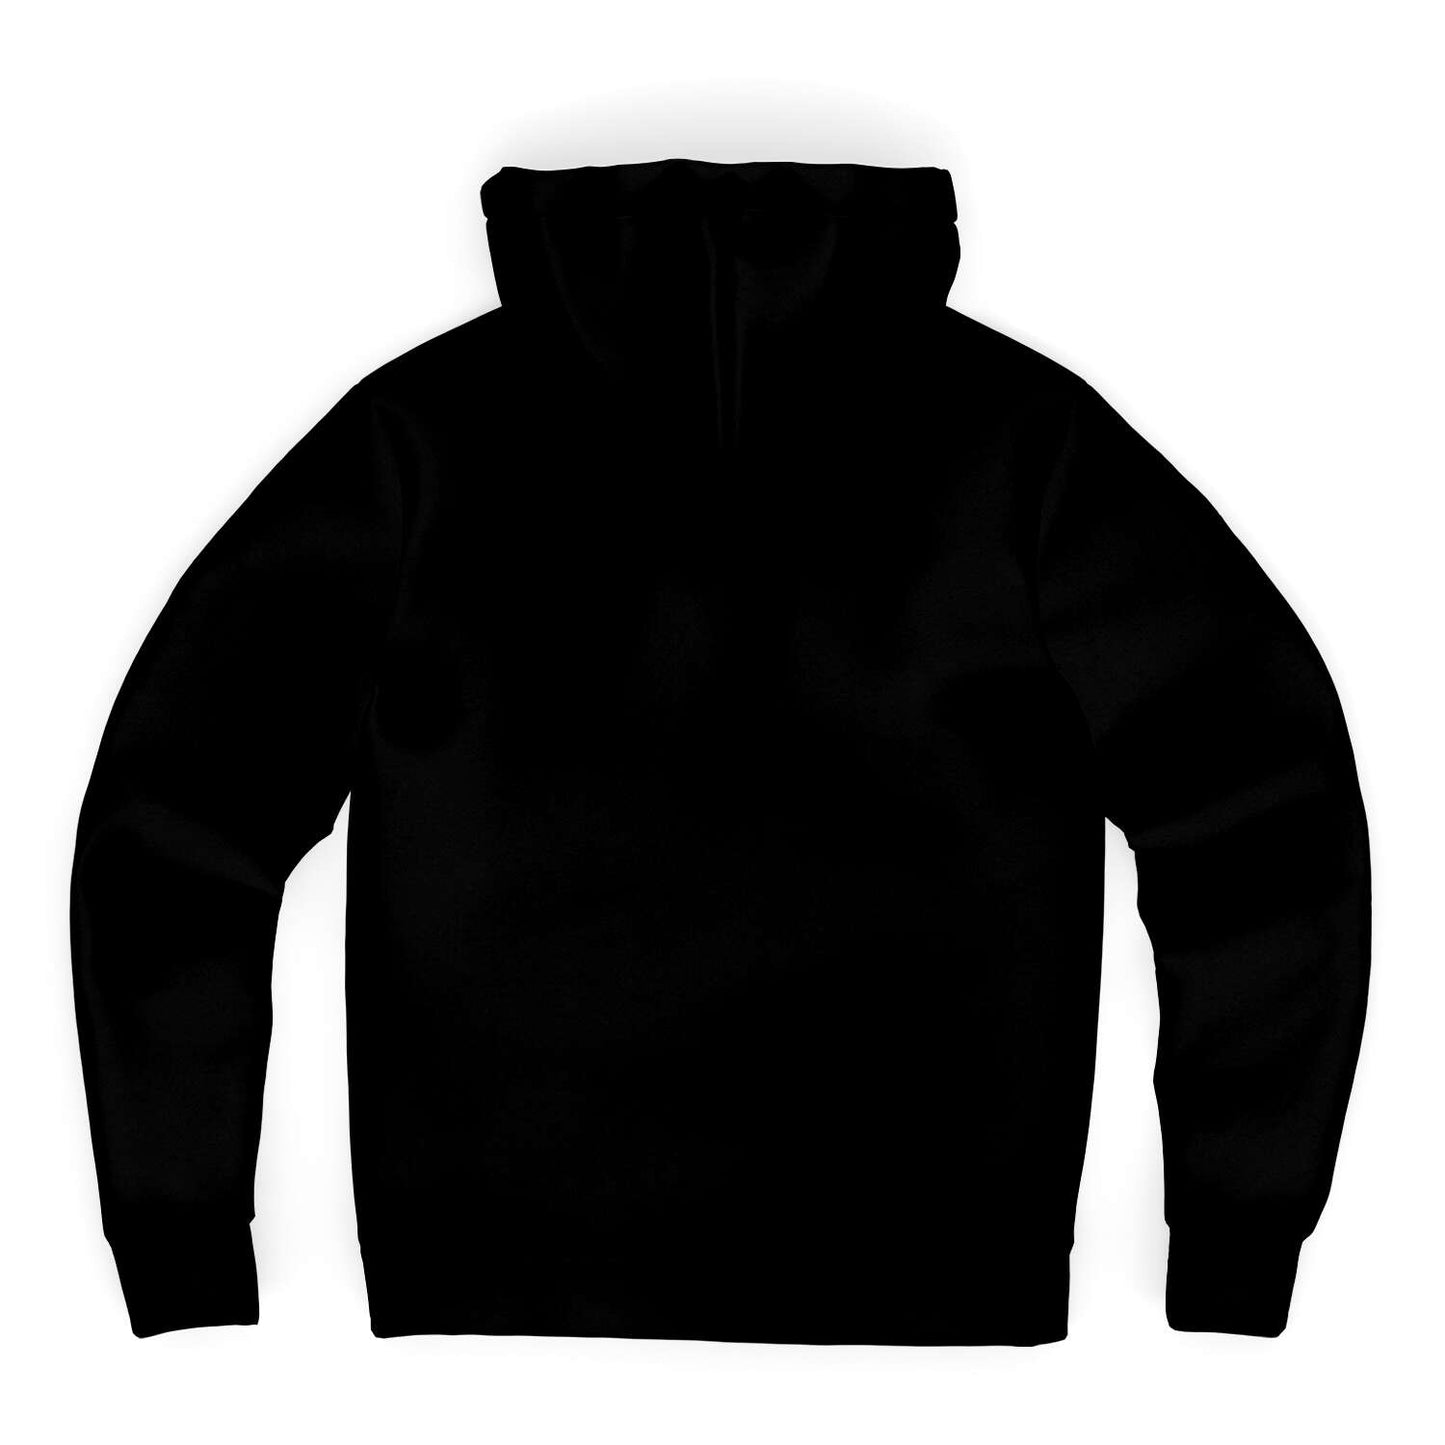 CNMI Seal Black Microfleece Hoodie Jacket